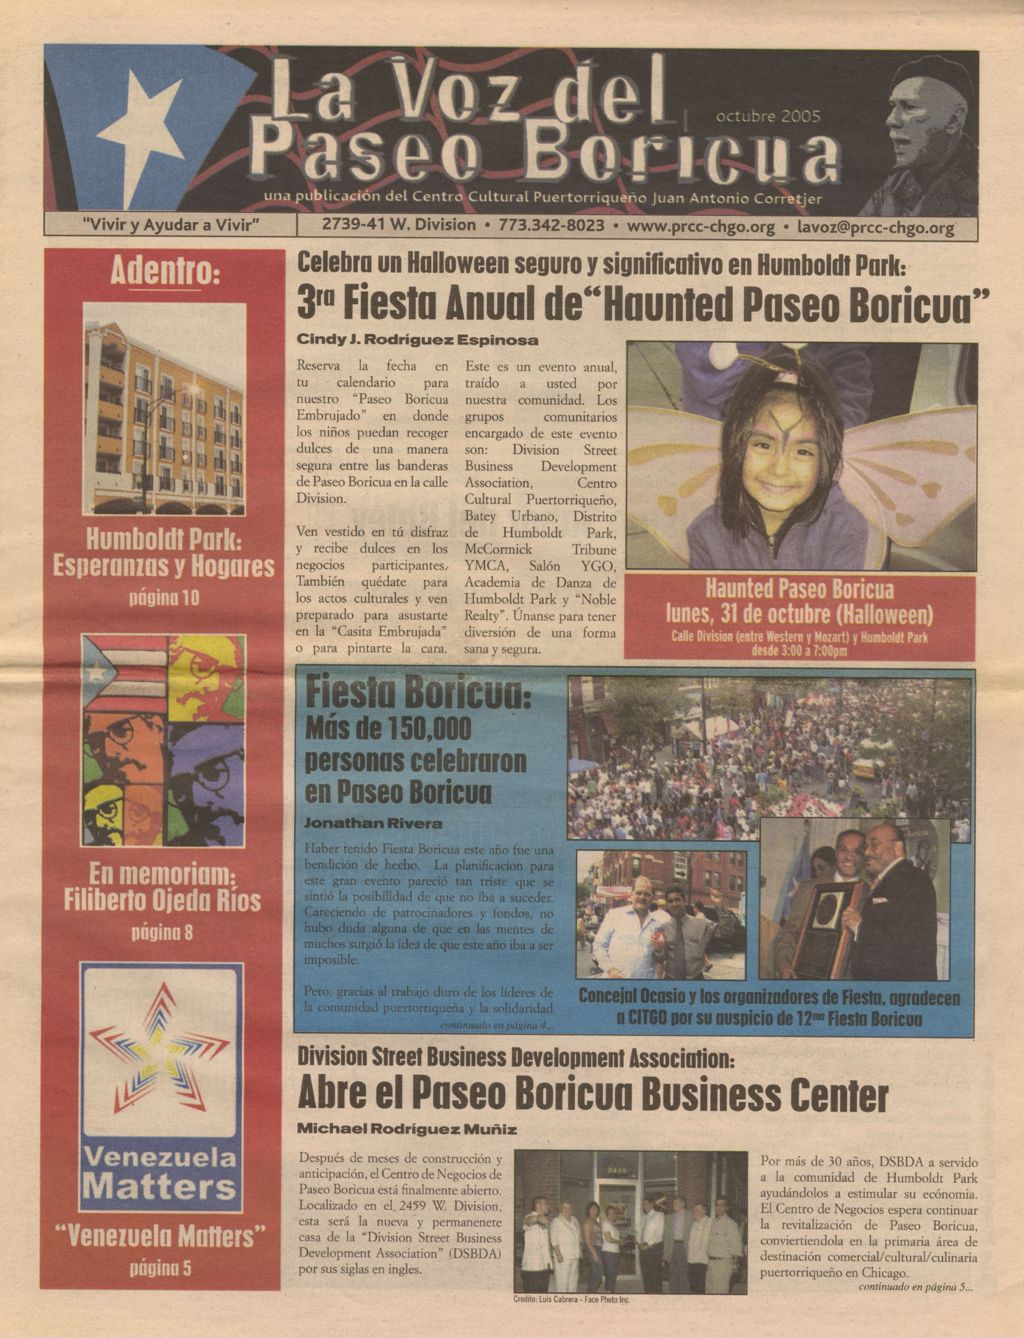 La Voz del Paseo Boricua; October 2005 (Spanish and English covers)